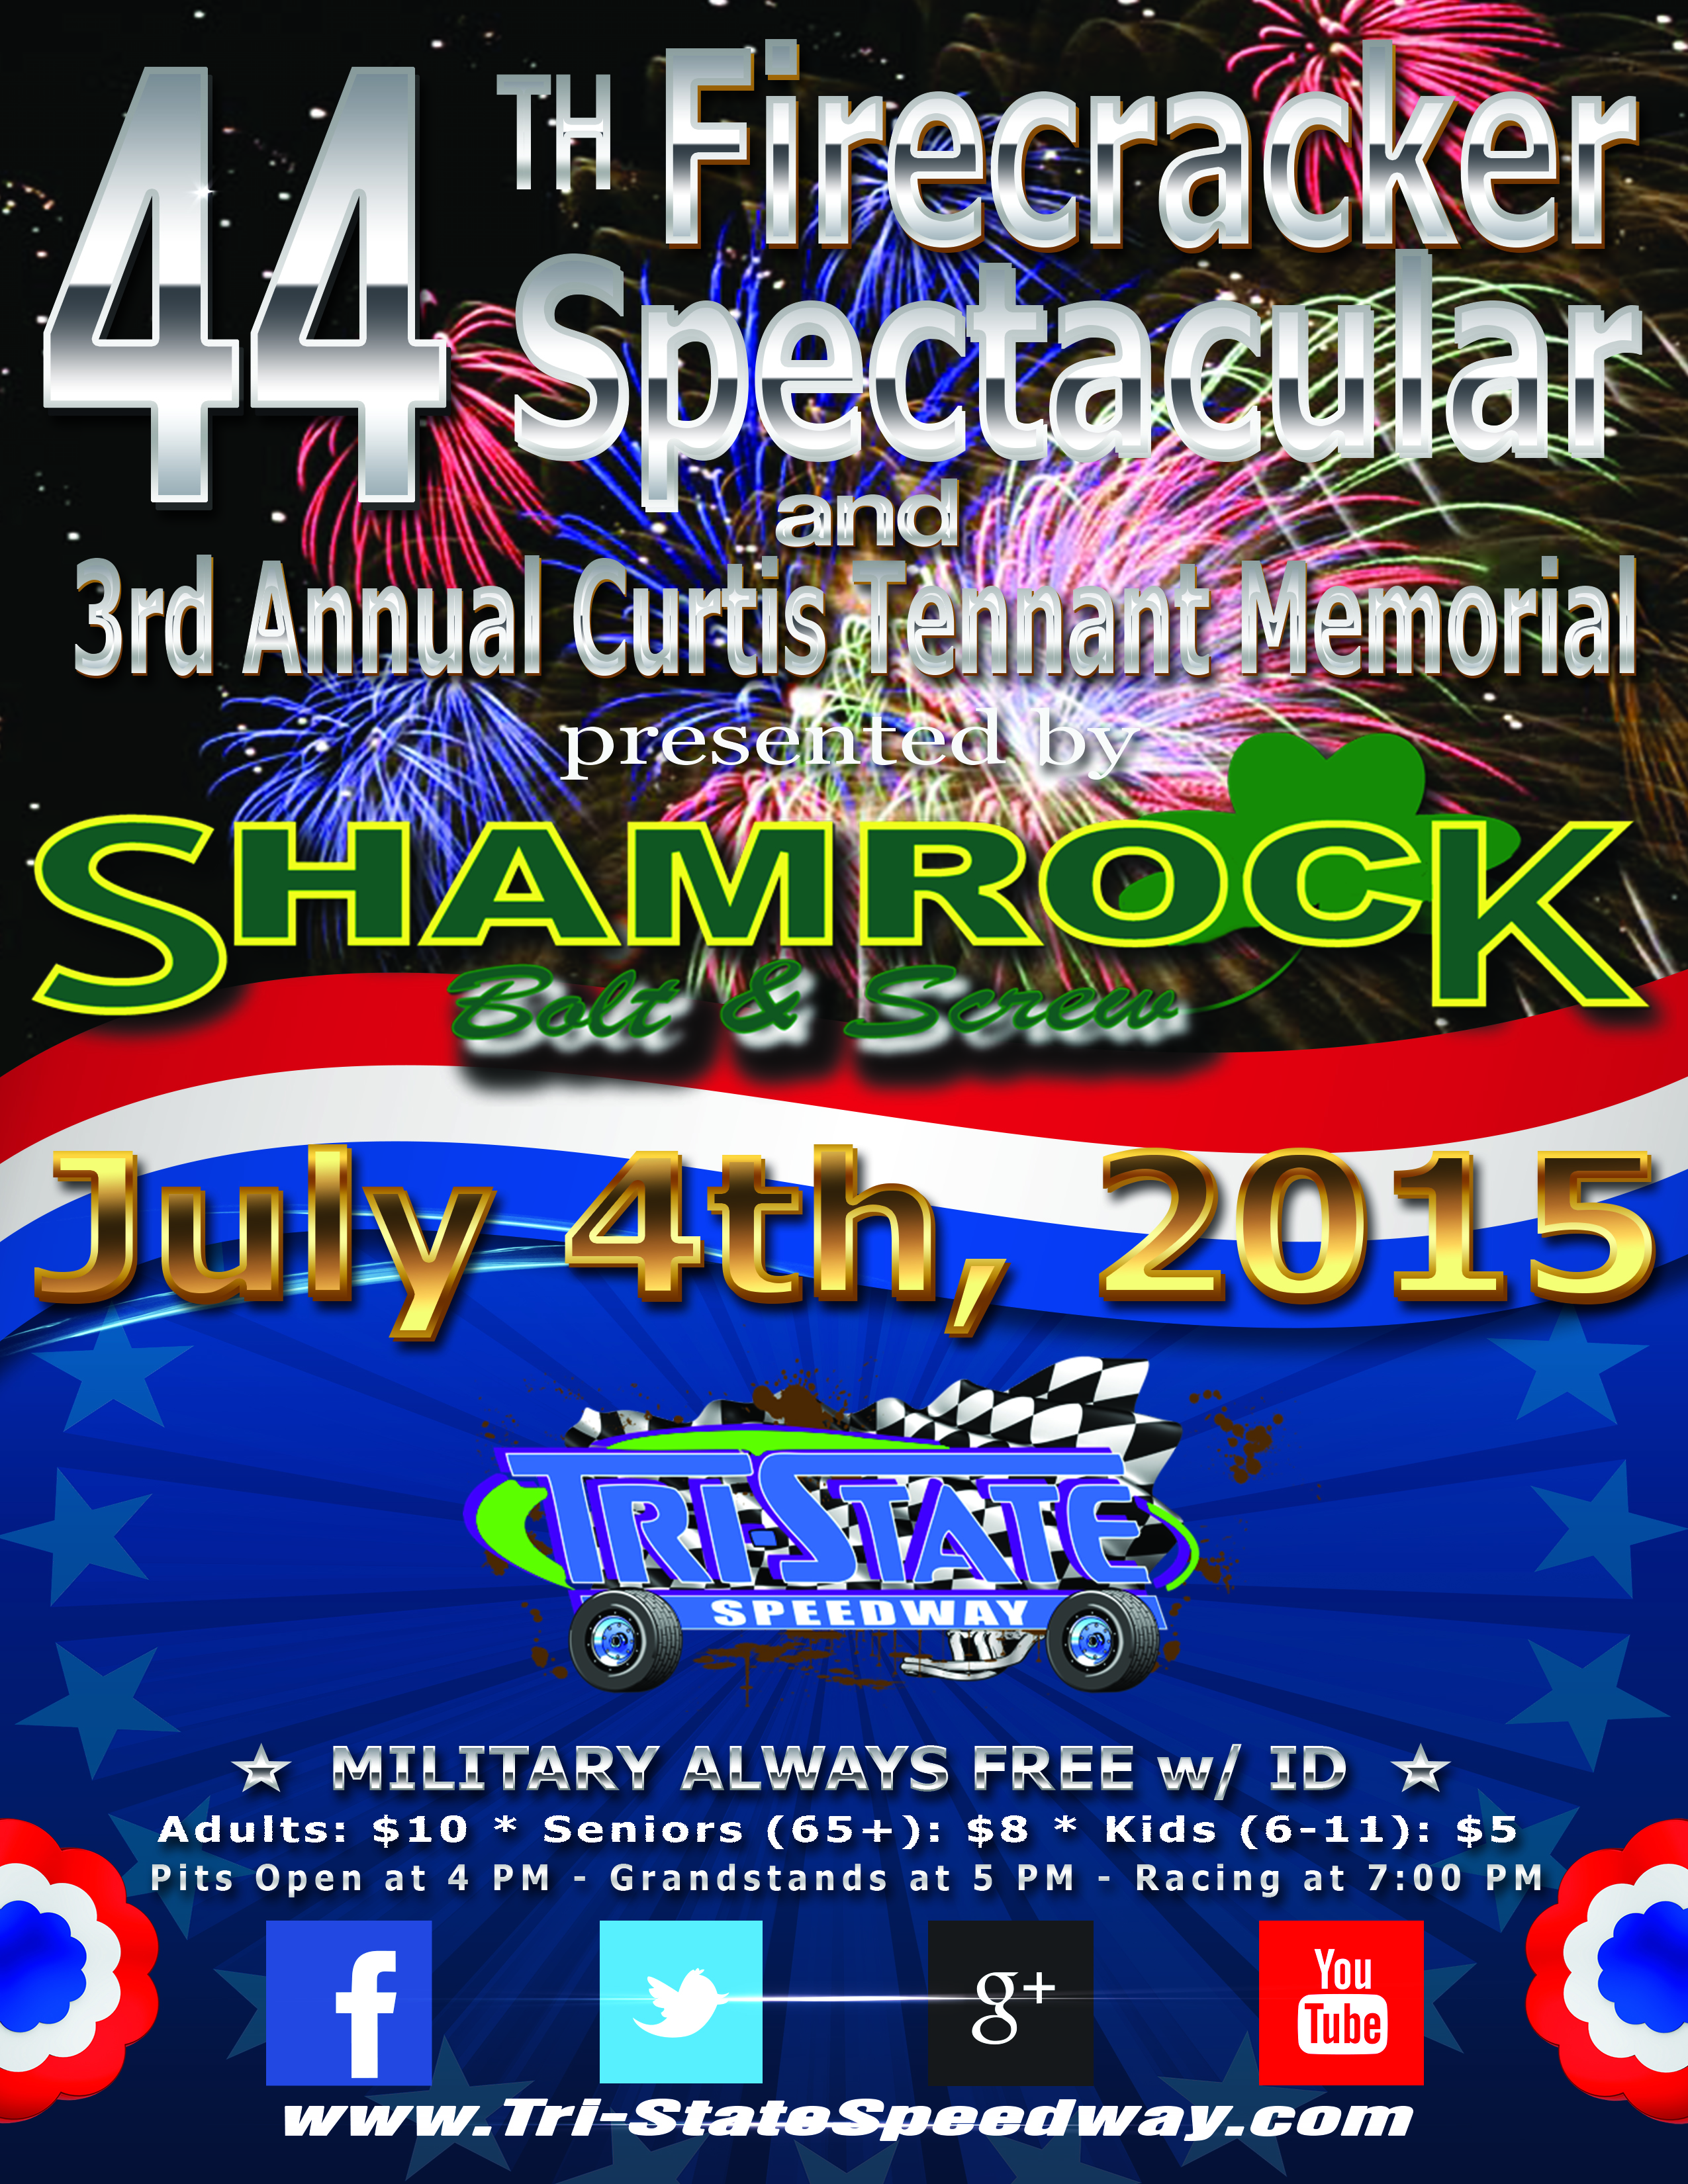 44th Annual Firecracker Spectacular & 3rd Annual Curtis Tennant Memorial